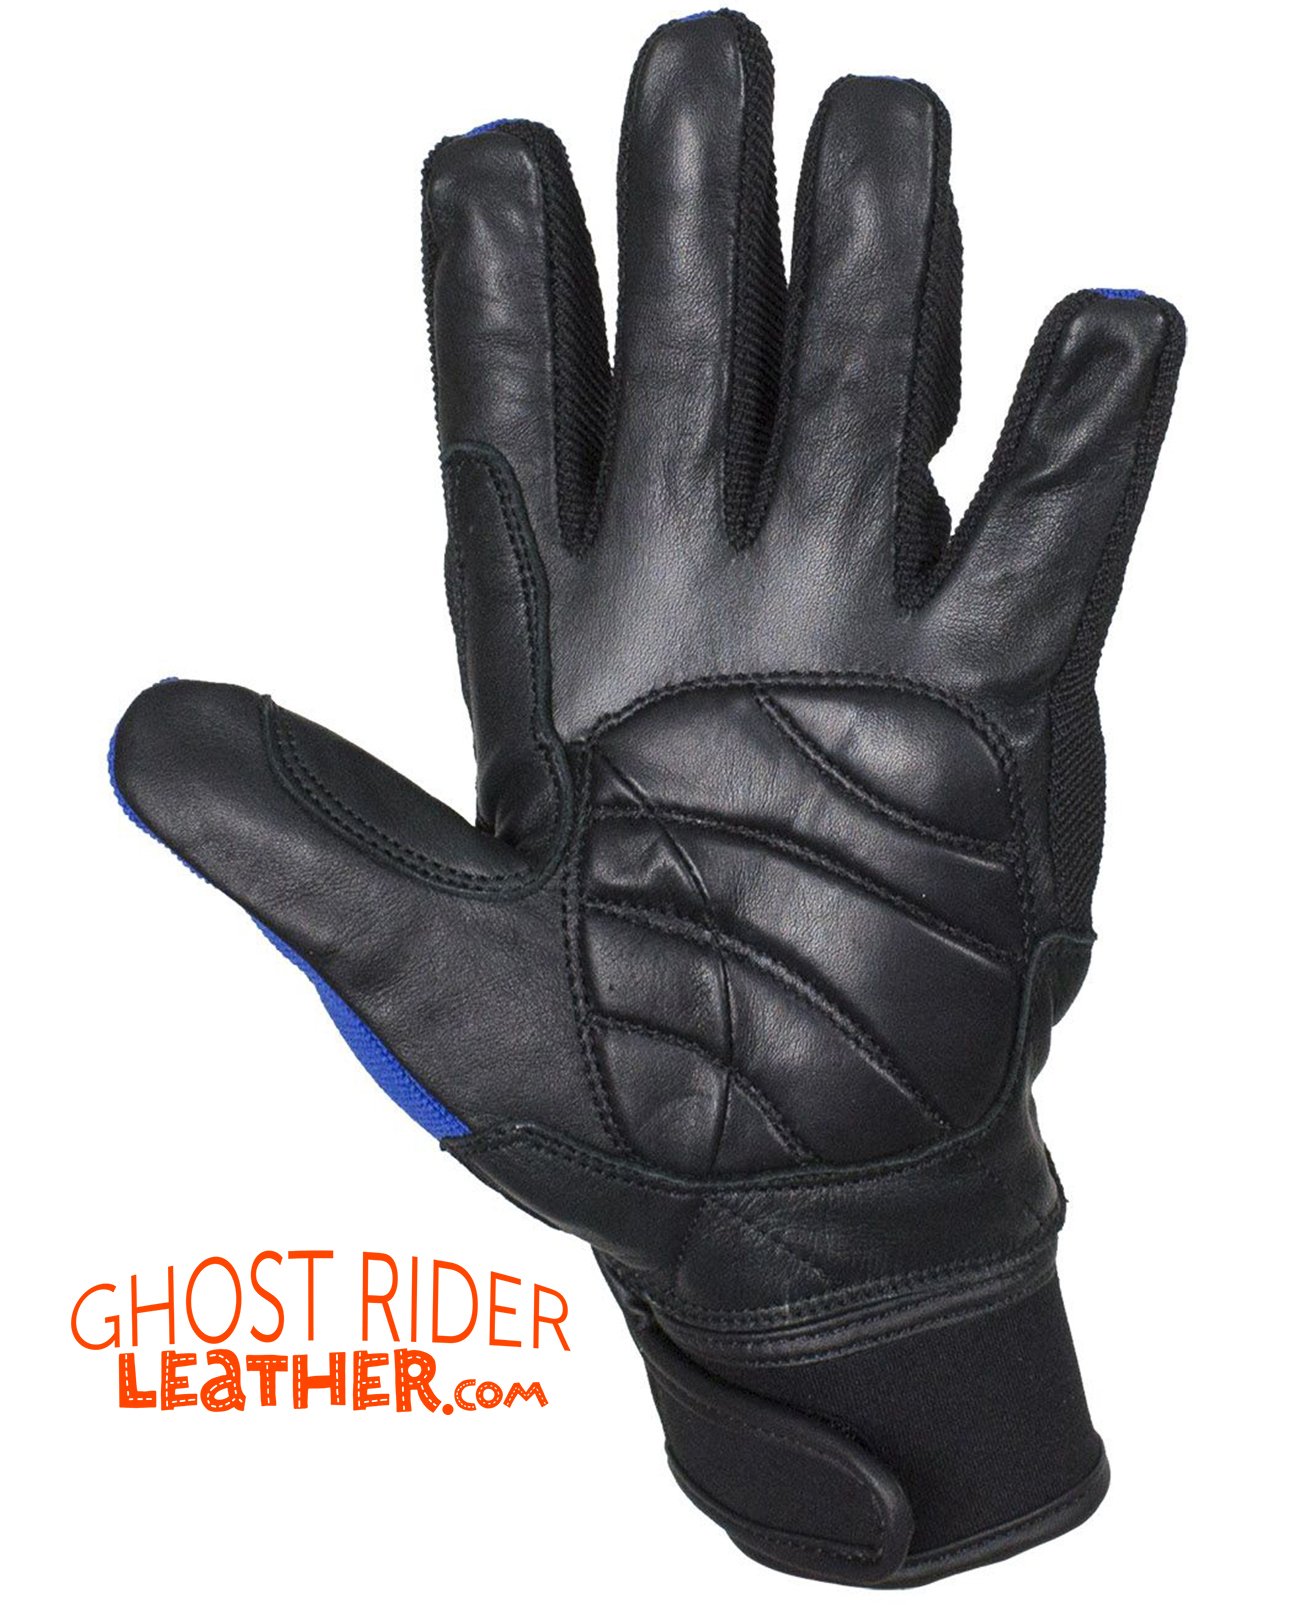 Leather Gloves - Men's - Full Finger - Knuckle Protector - Blue - GLZ108-BLUE-DL